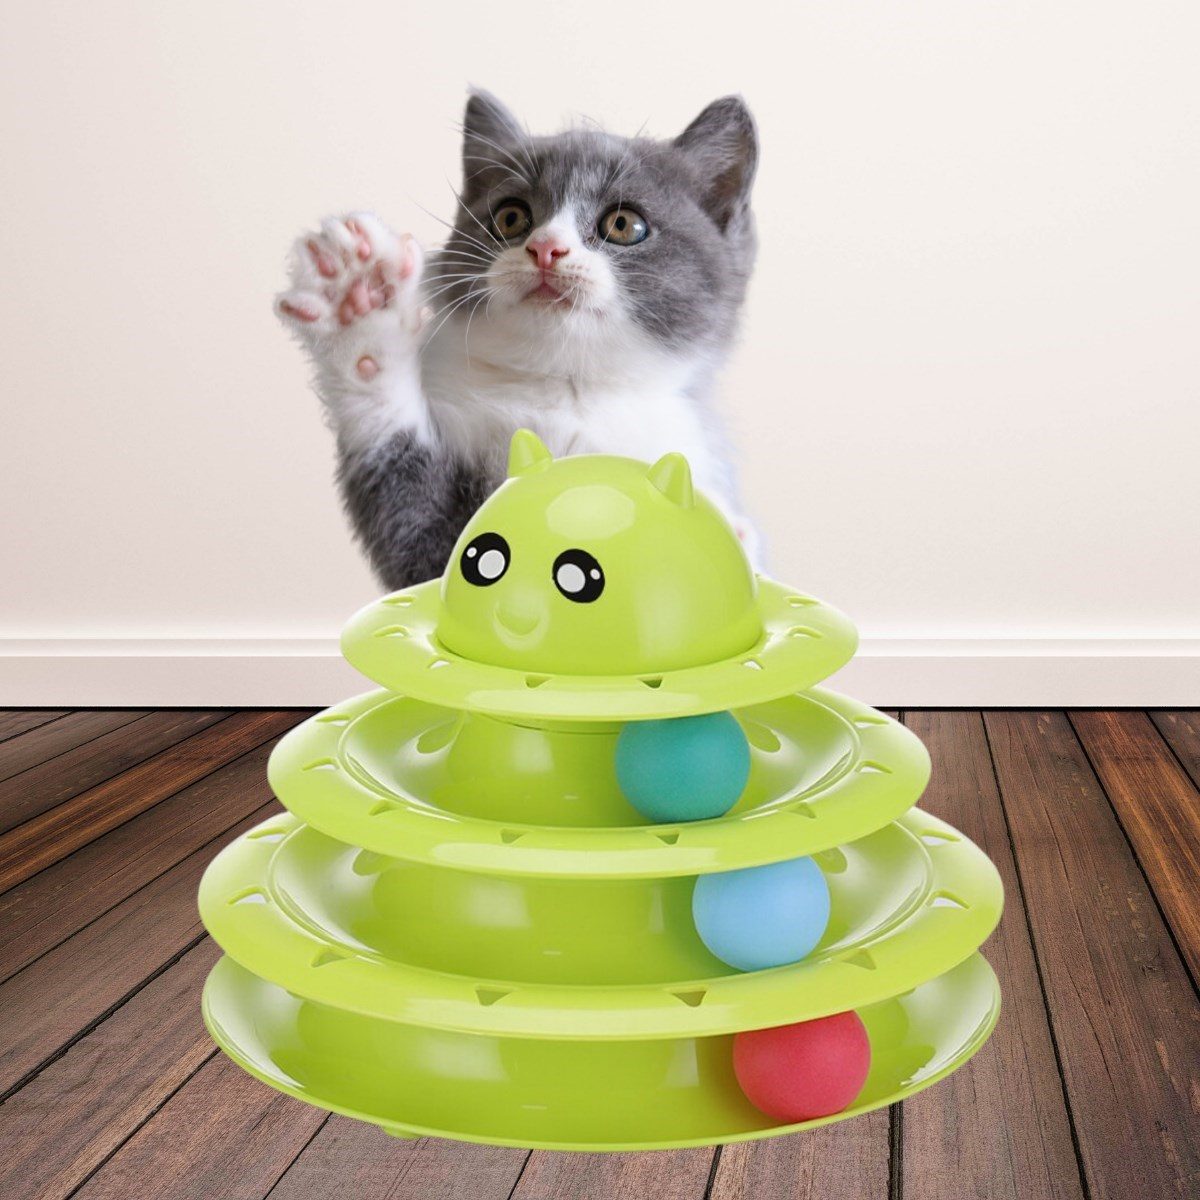 CLZ192 Tower Of Tracks Eğlenceli Üç Katlı Kedi Oyuncağı Seti Kedi Oyunu (4172)